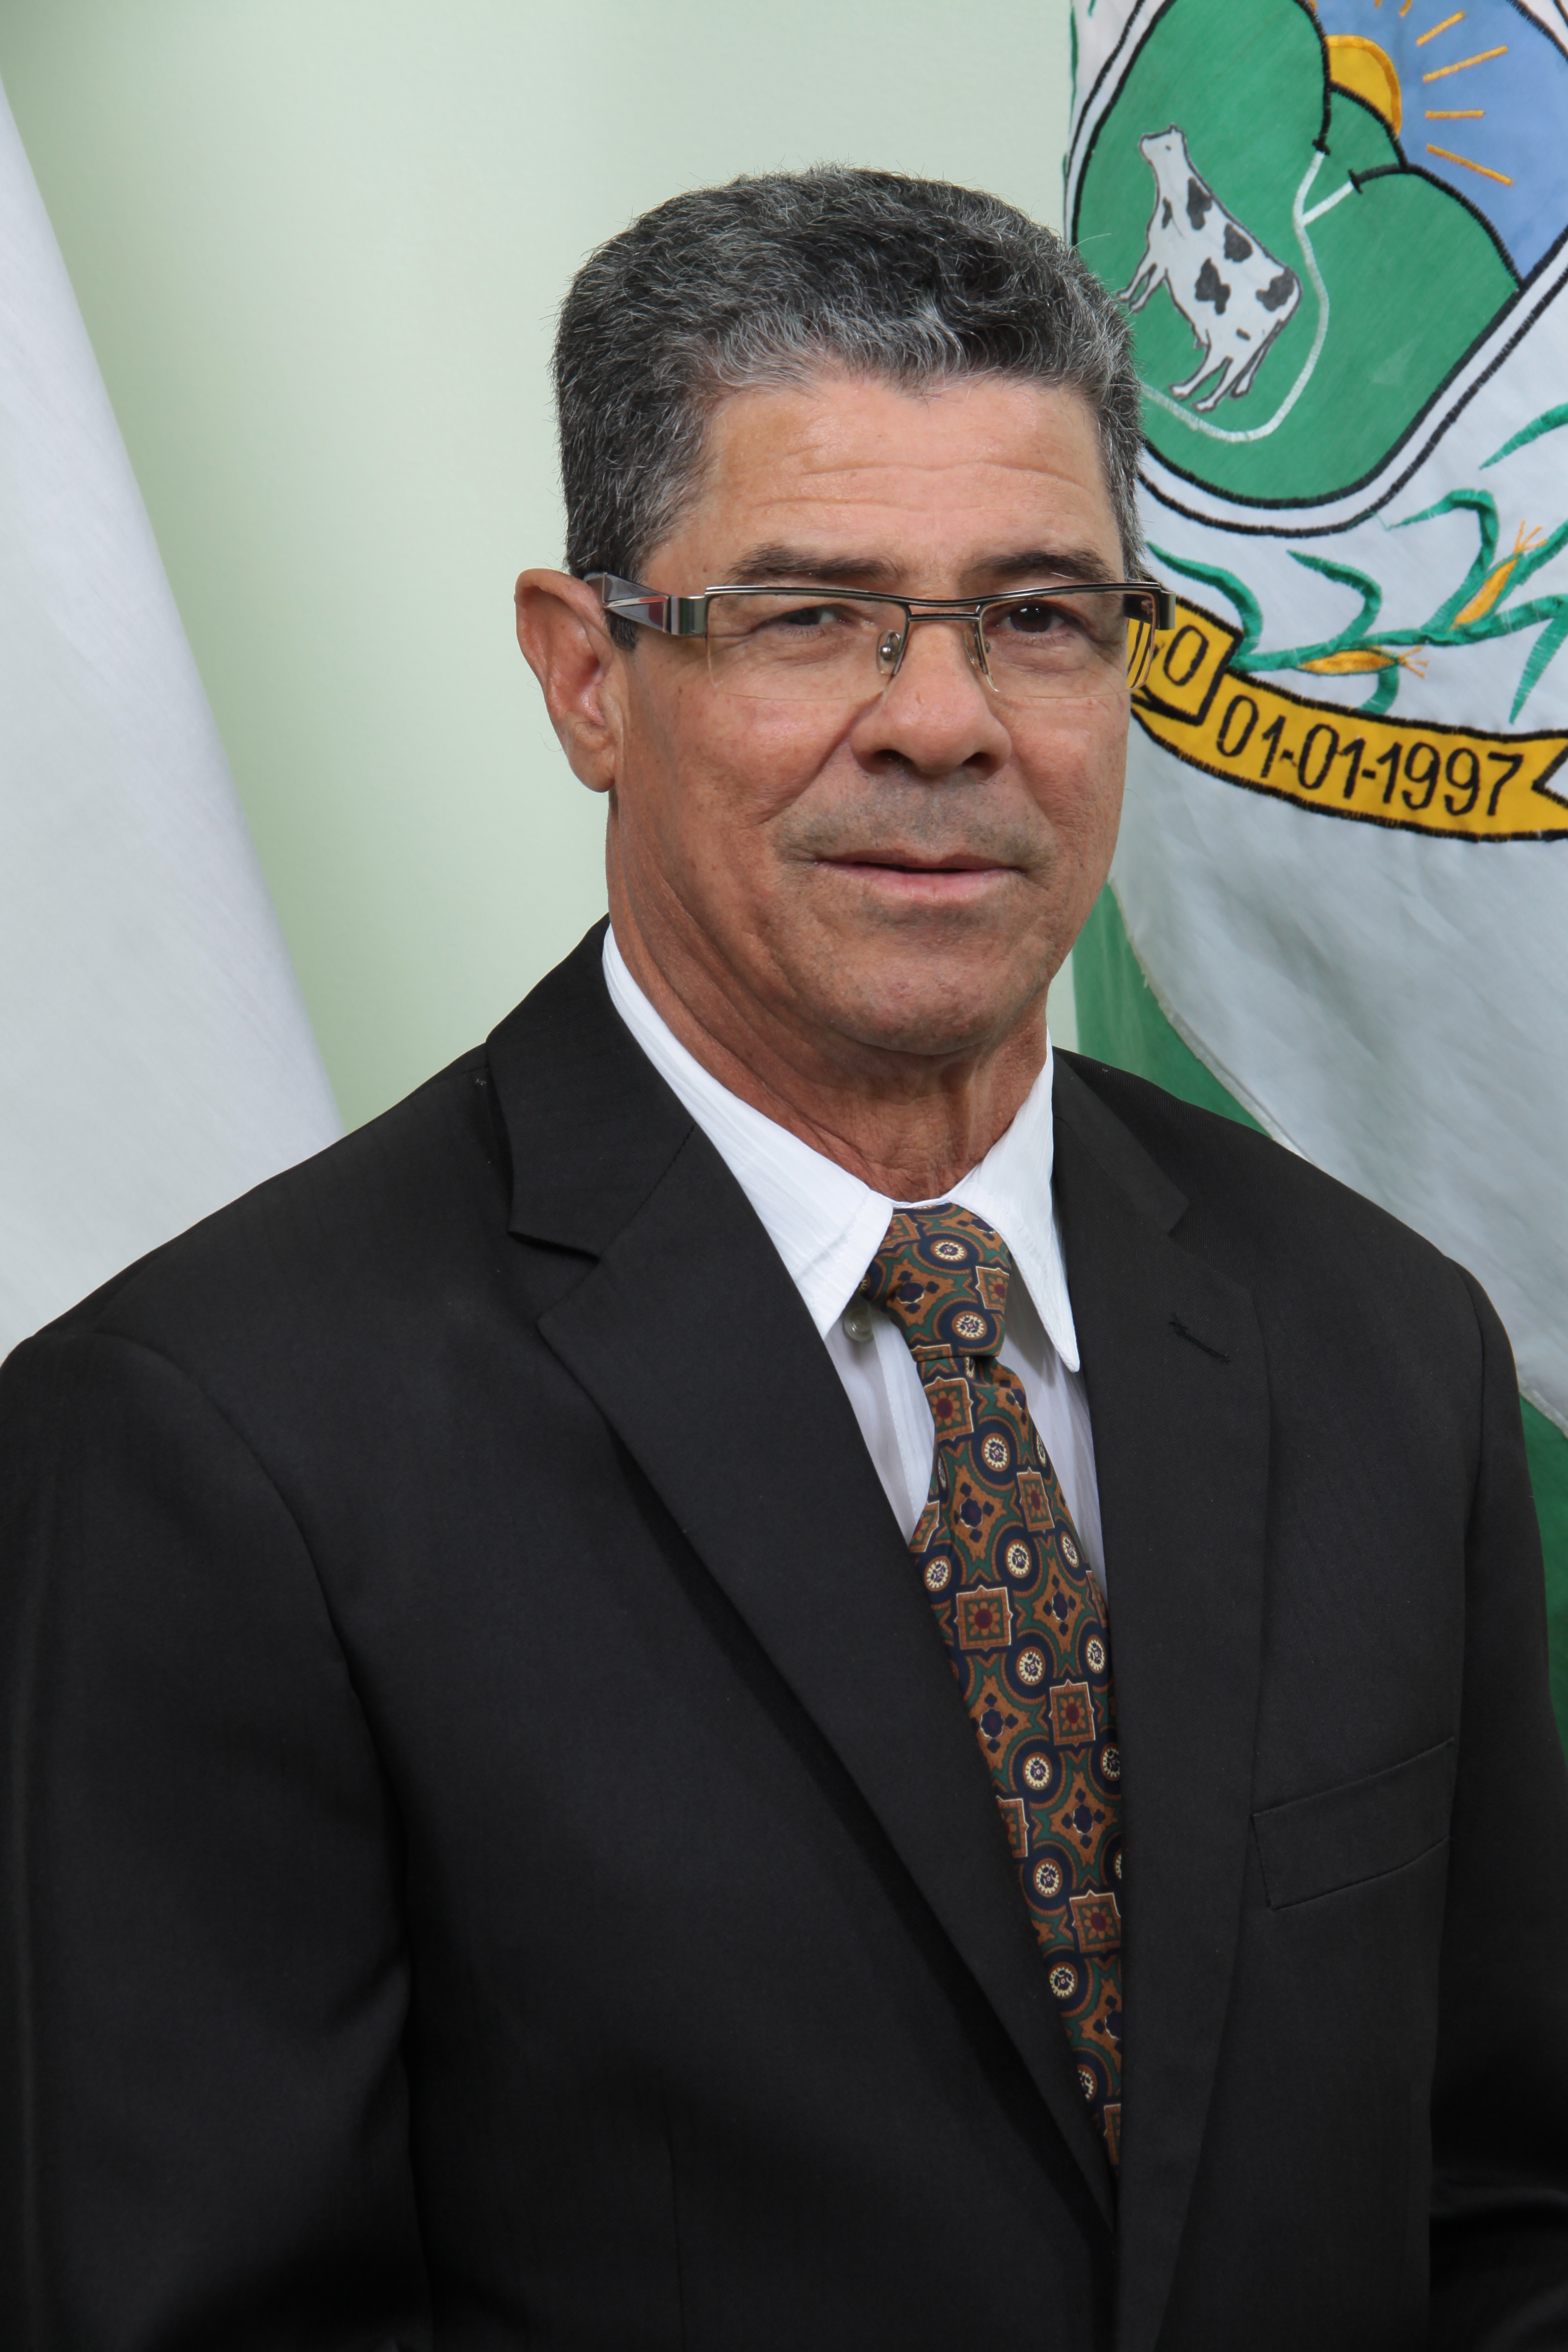 14º Presidente - Vereador Francisco Cardoso Guedes